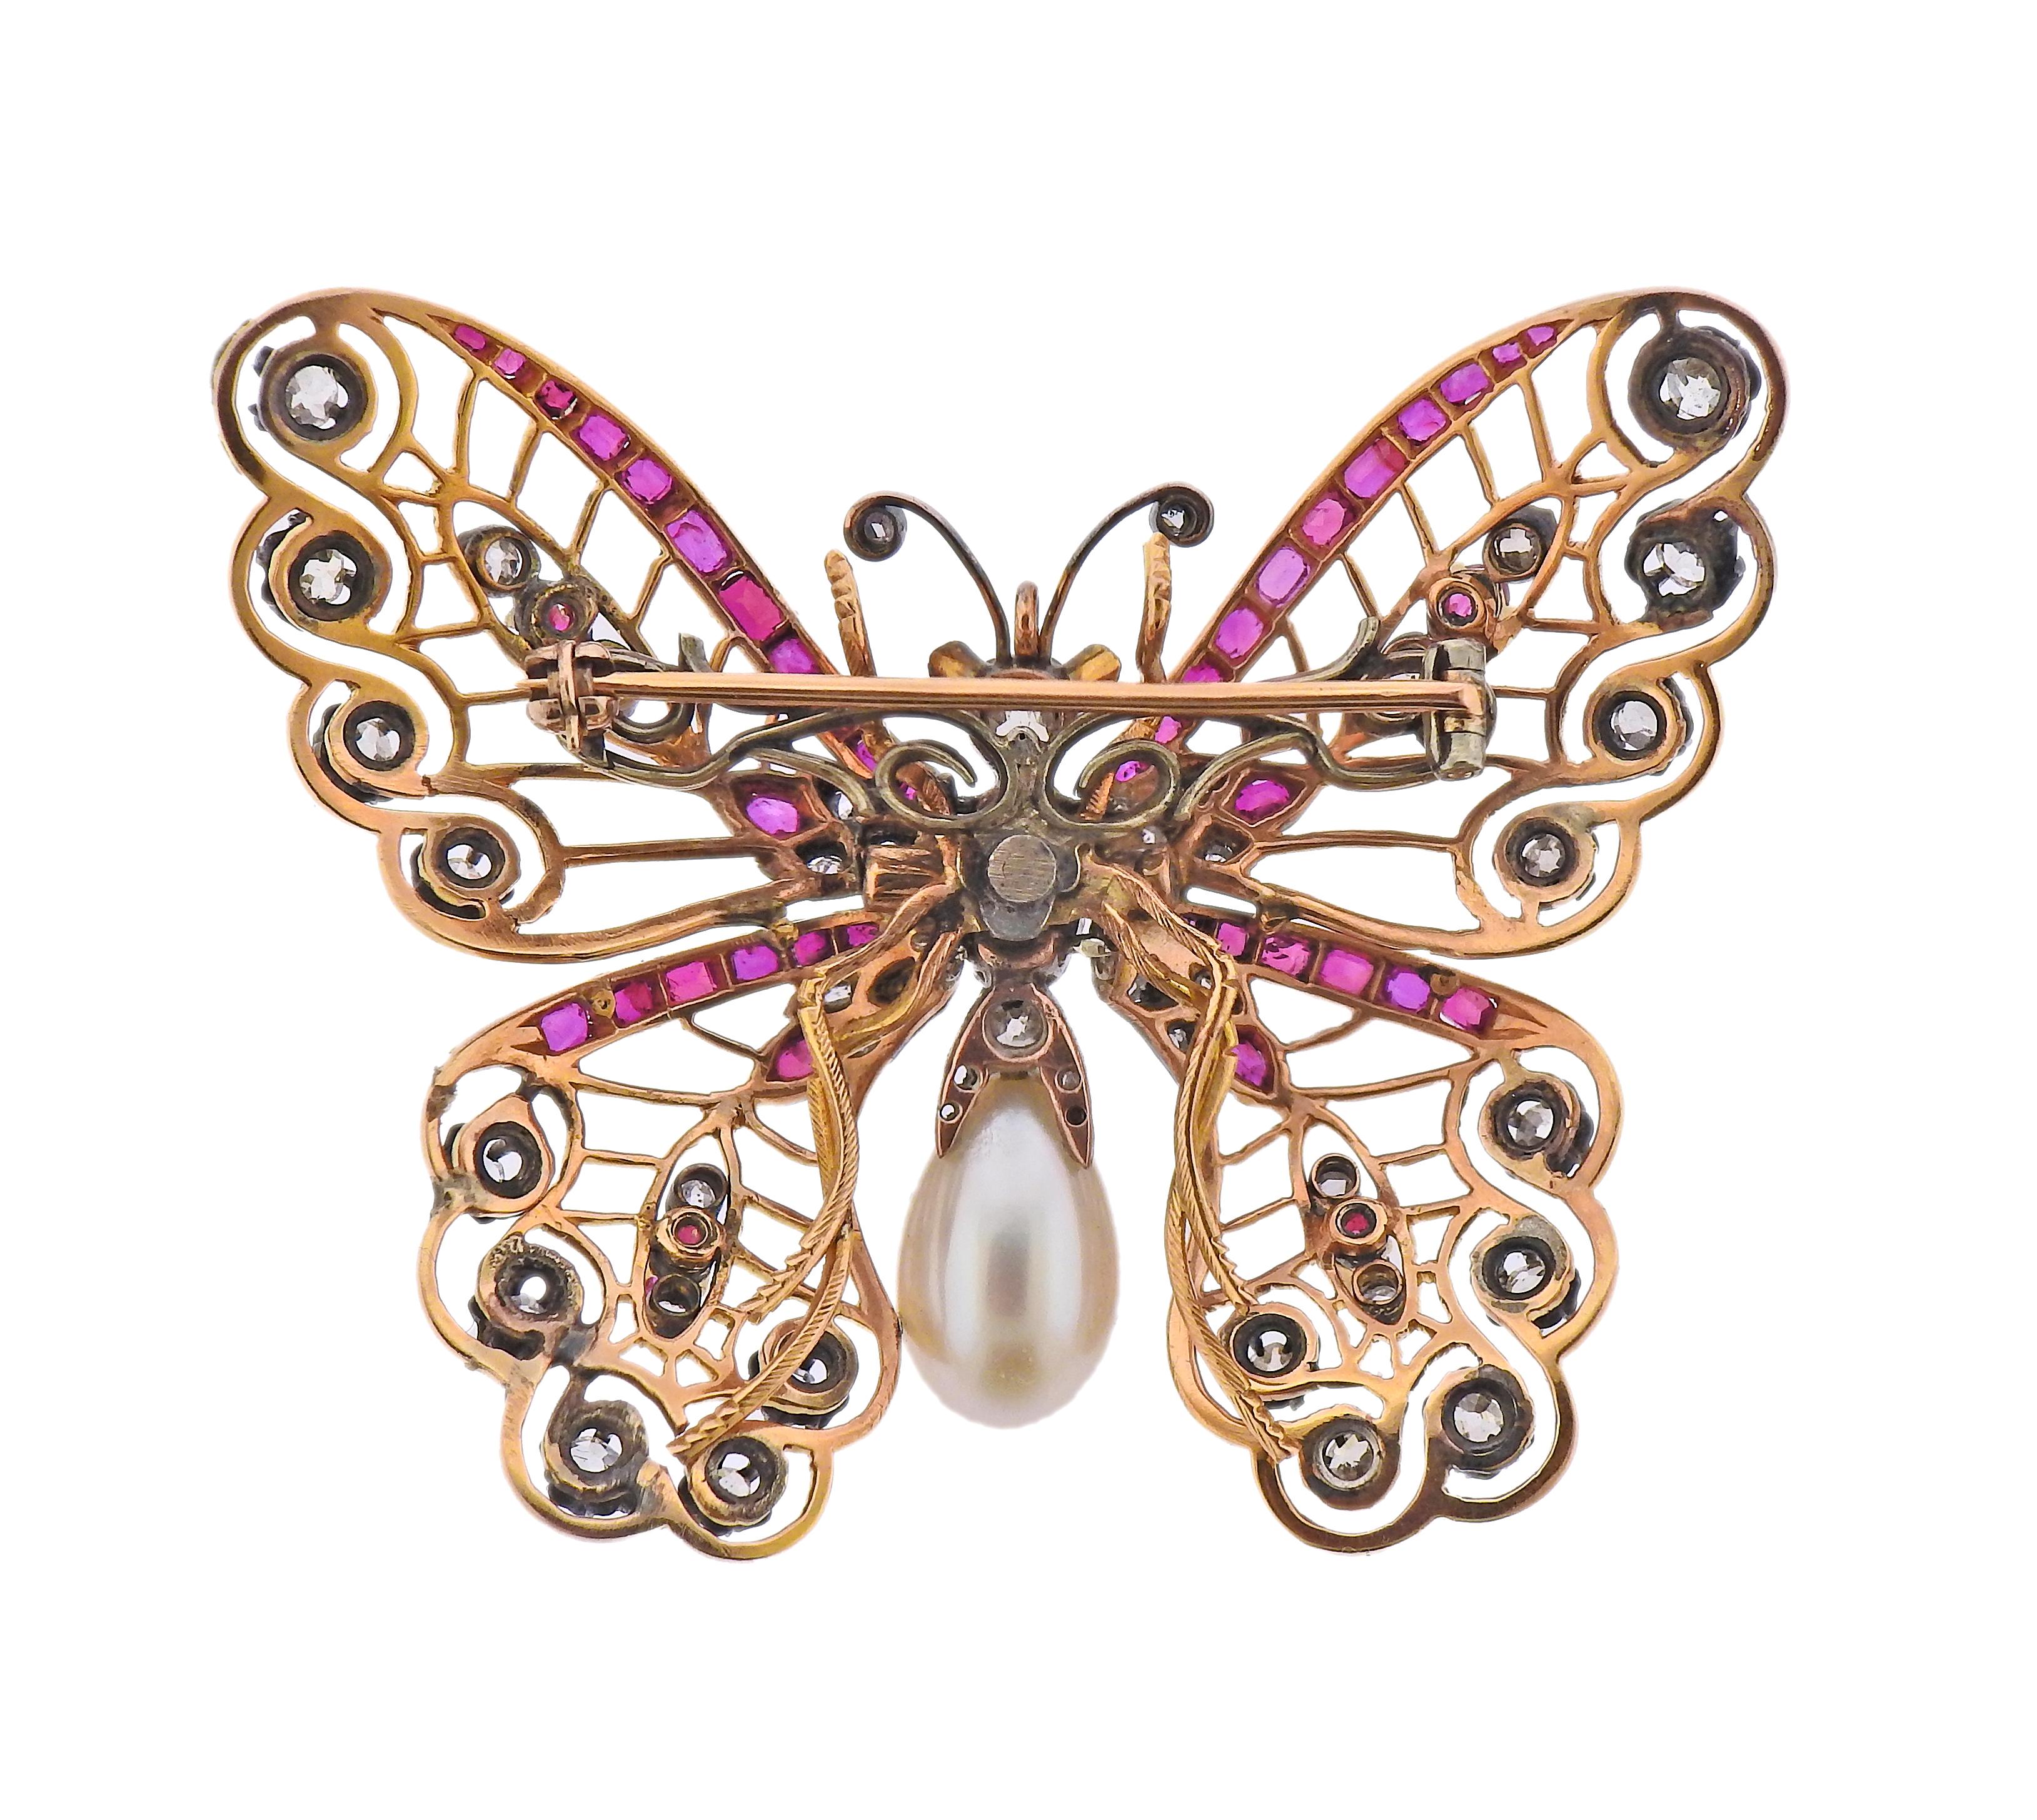 Große antike Schmetterlingsbrosche, gefasst in 18 Karat Gold und Silber, verziert mit Diamanten im Rosenschliff, Rubinen und einer Perle. Die Brosche misst 50 mm x 58 mm. Gewicht - 24,8 Gramm.